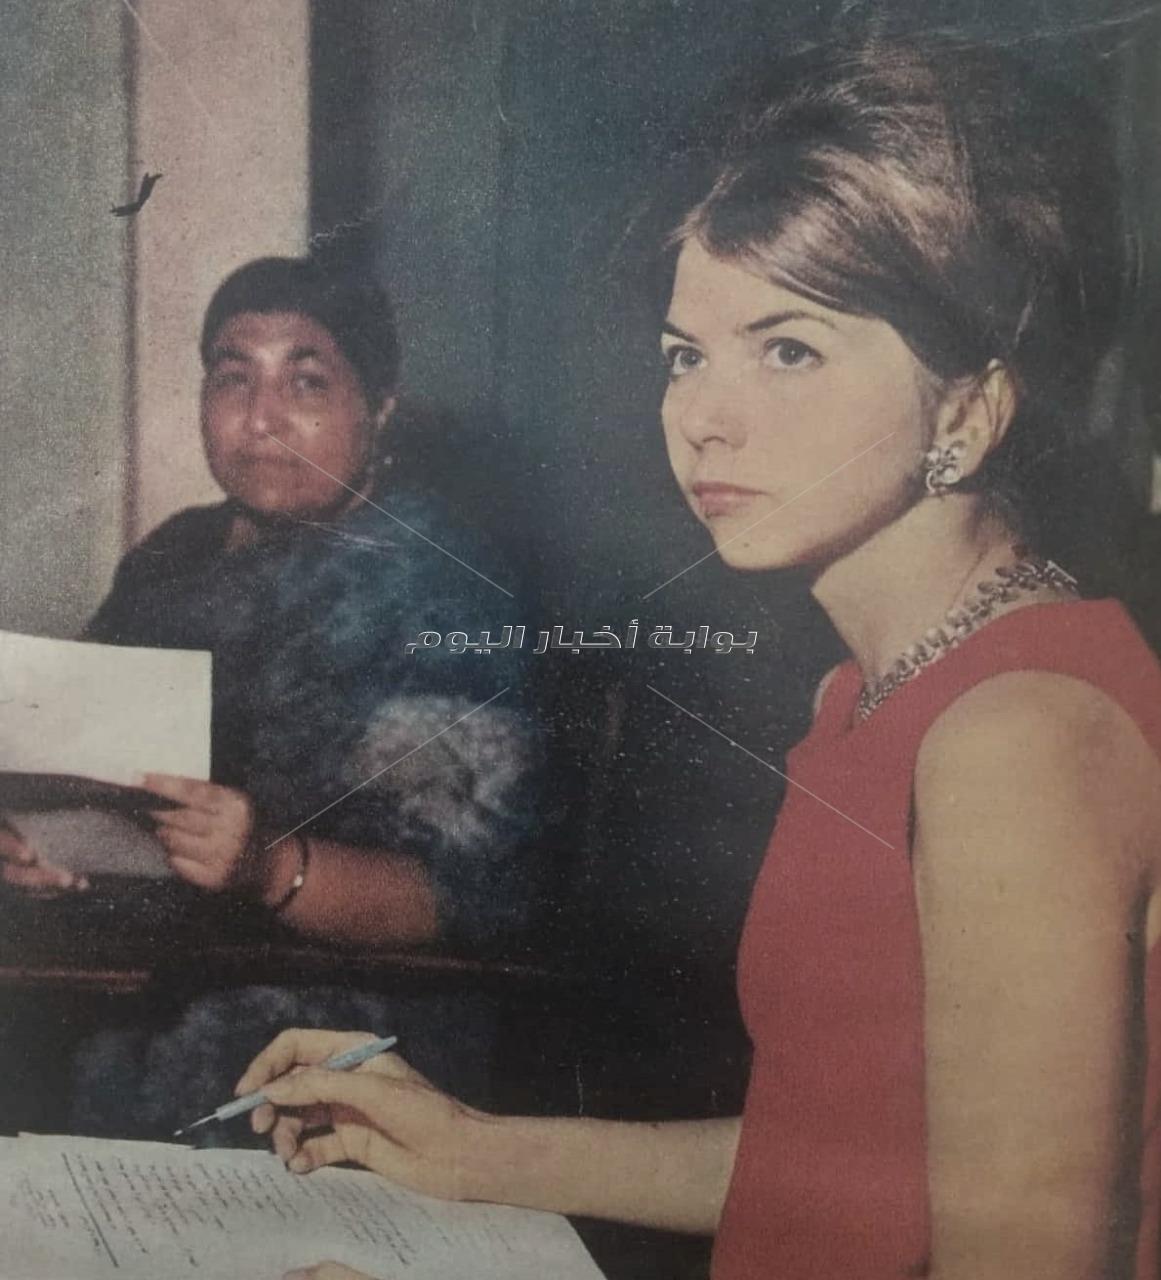 امتحان في "اللغة العربية" للدبلوماسيين الأجانب بالقاهرة